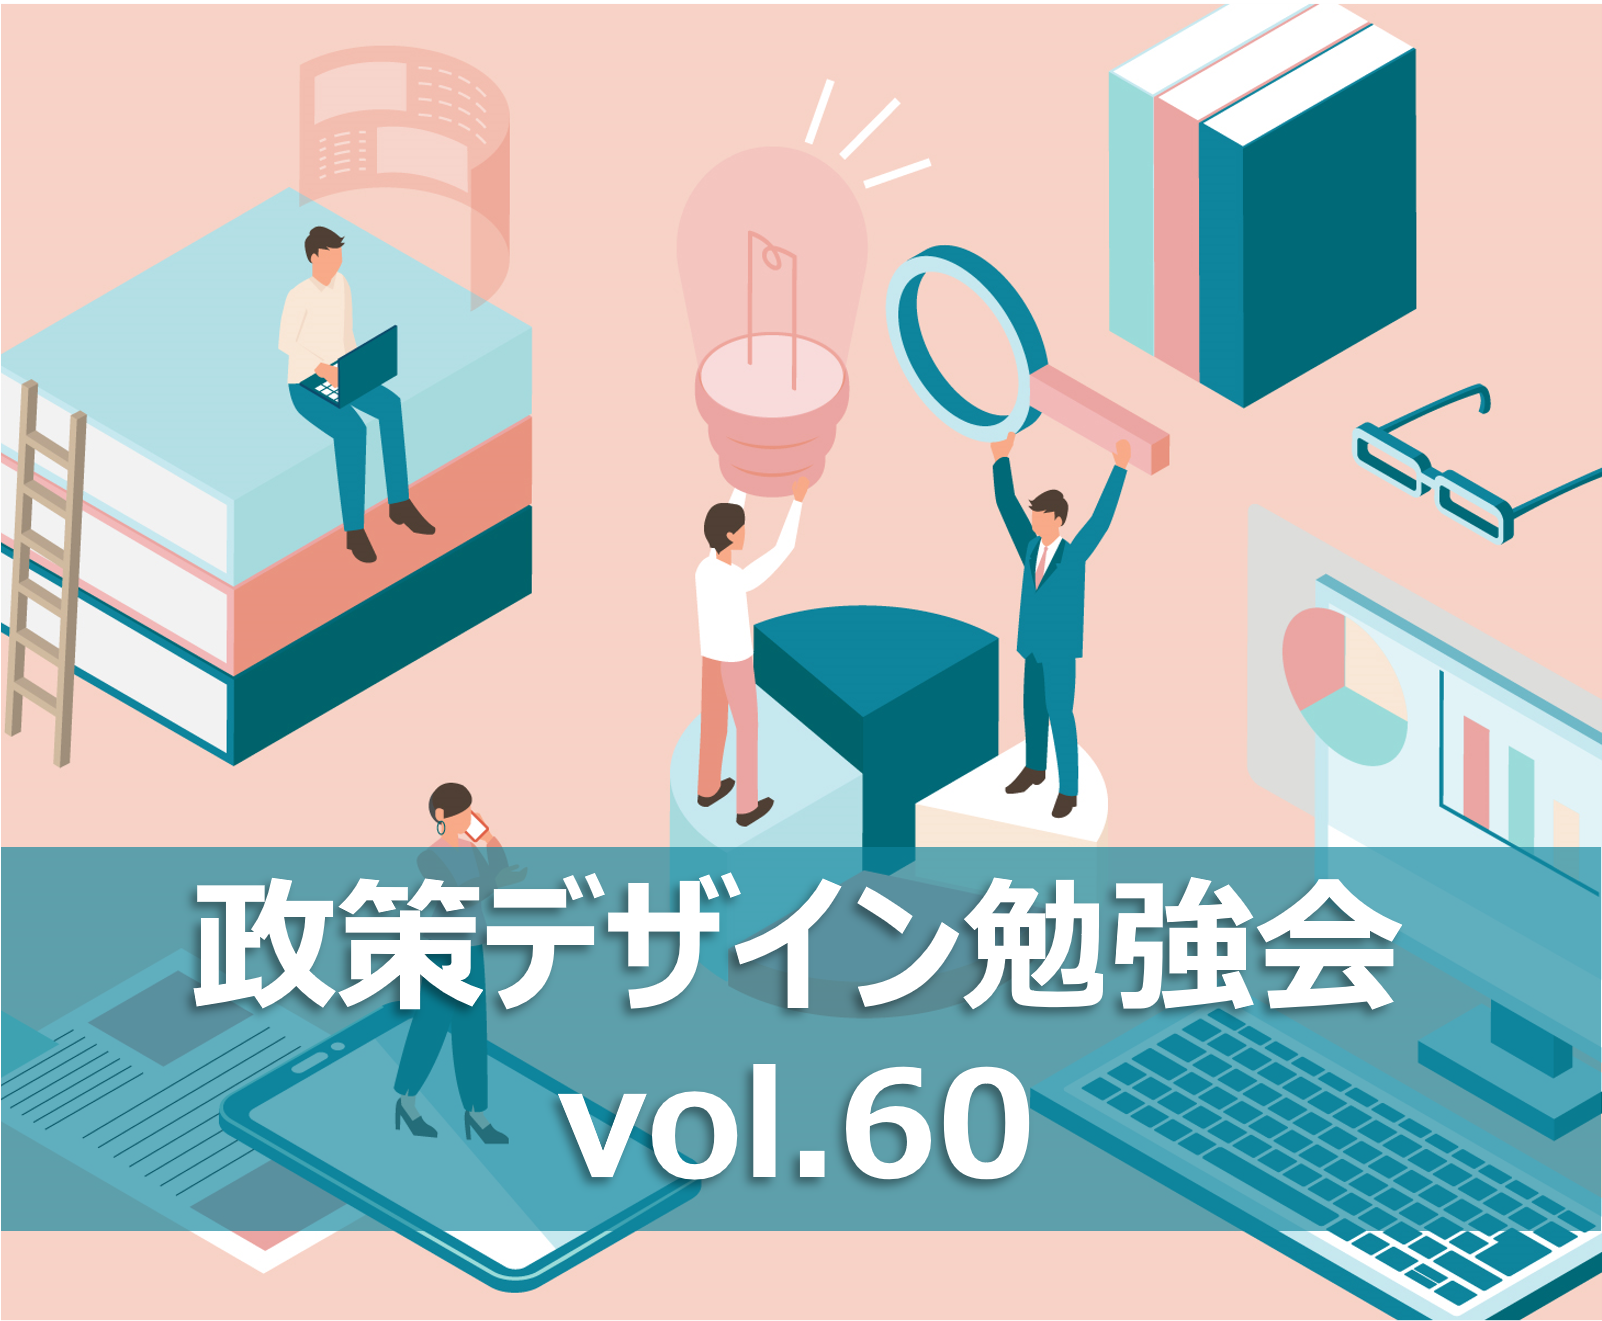 【政策デザイン勉強会vol.60】横浜市におけるWeb3.0を活用した地域課題解決を考える その1